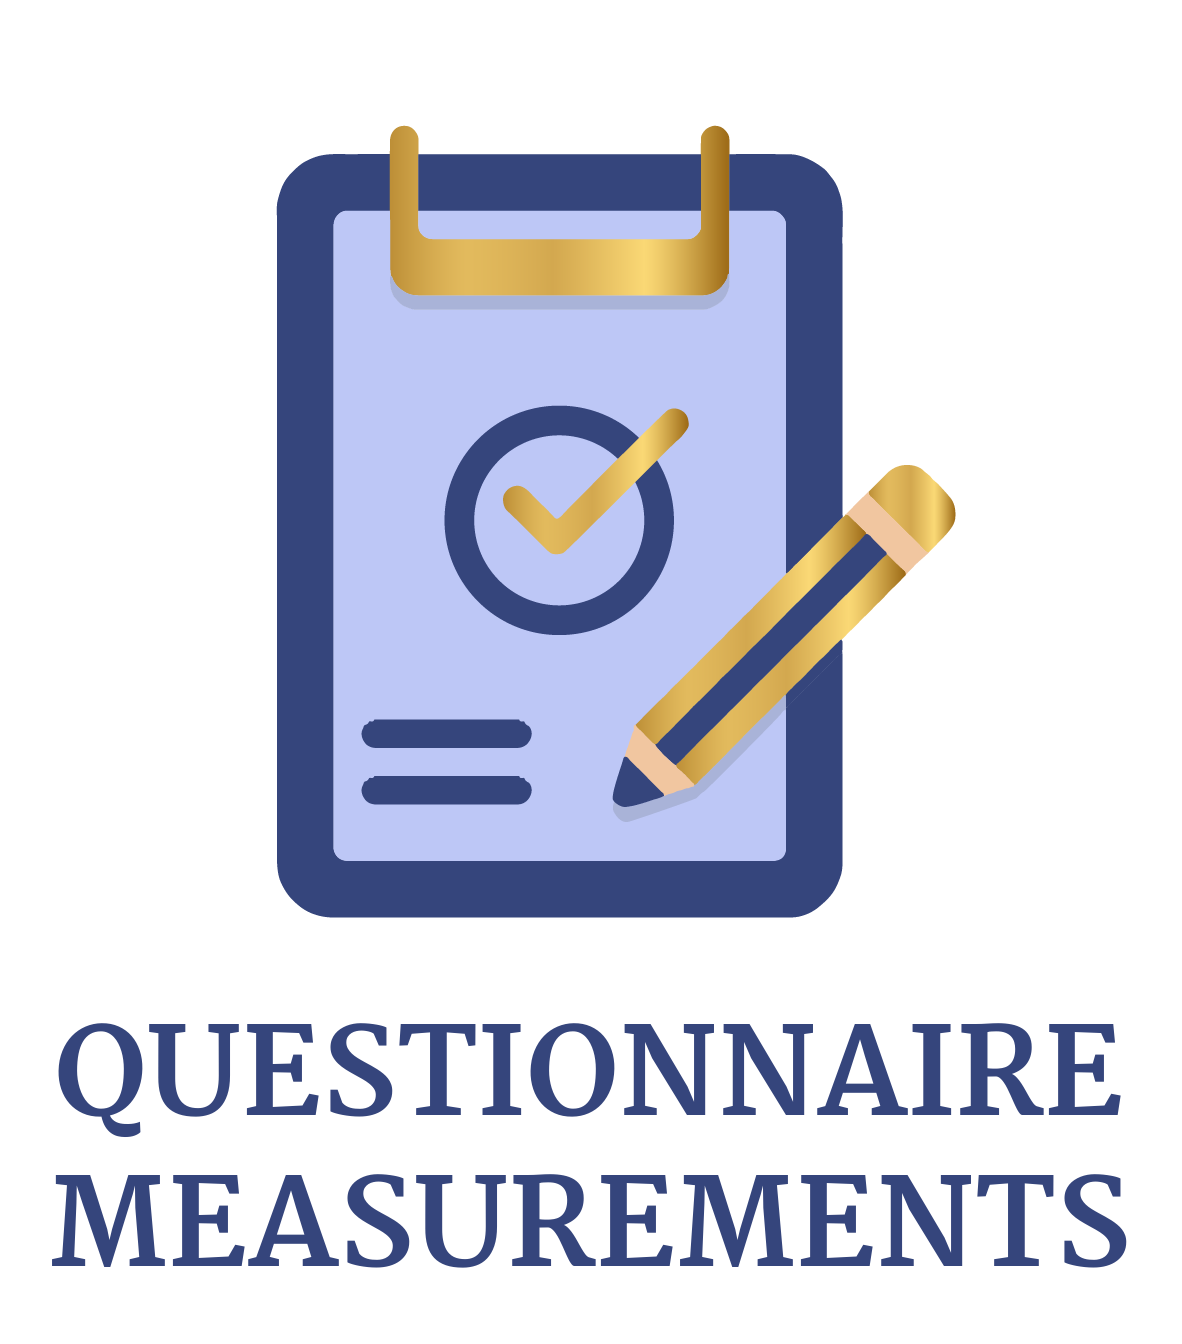 Questionnaire measurements